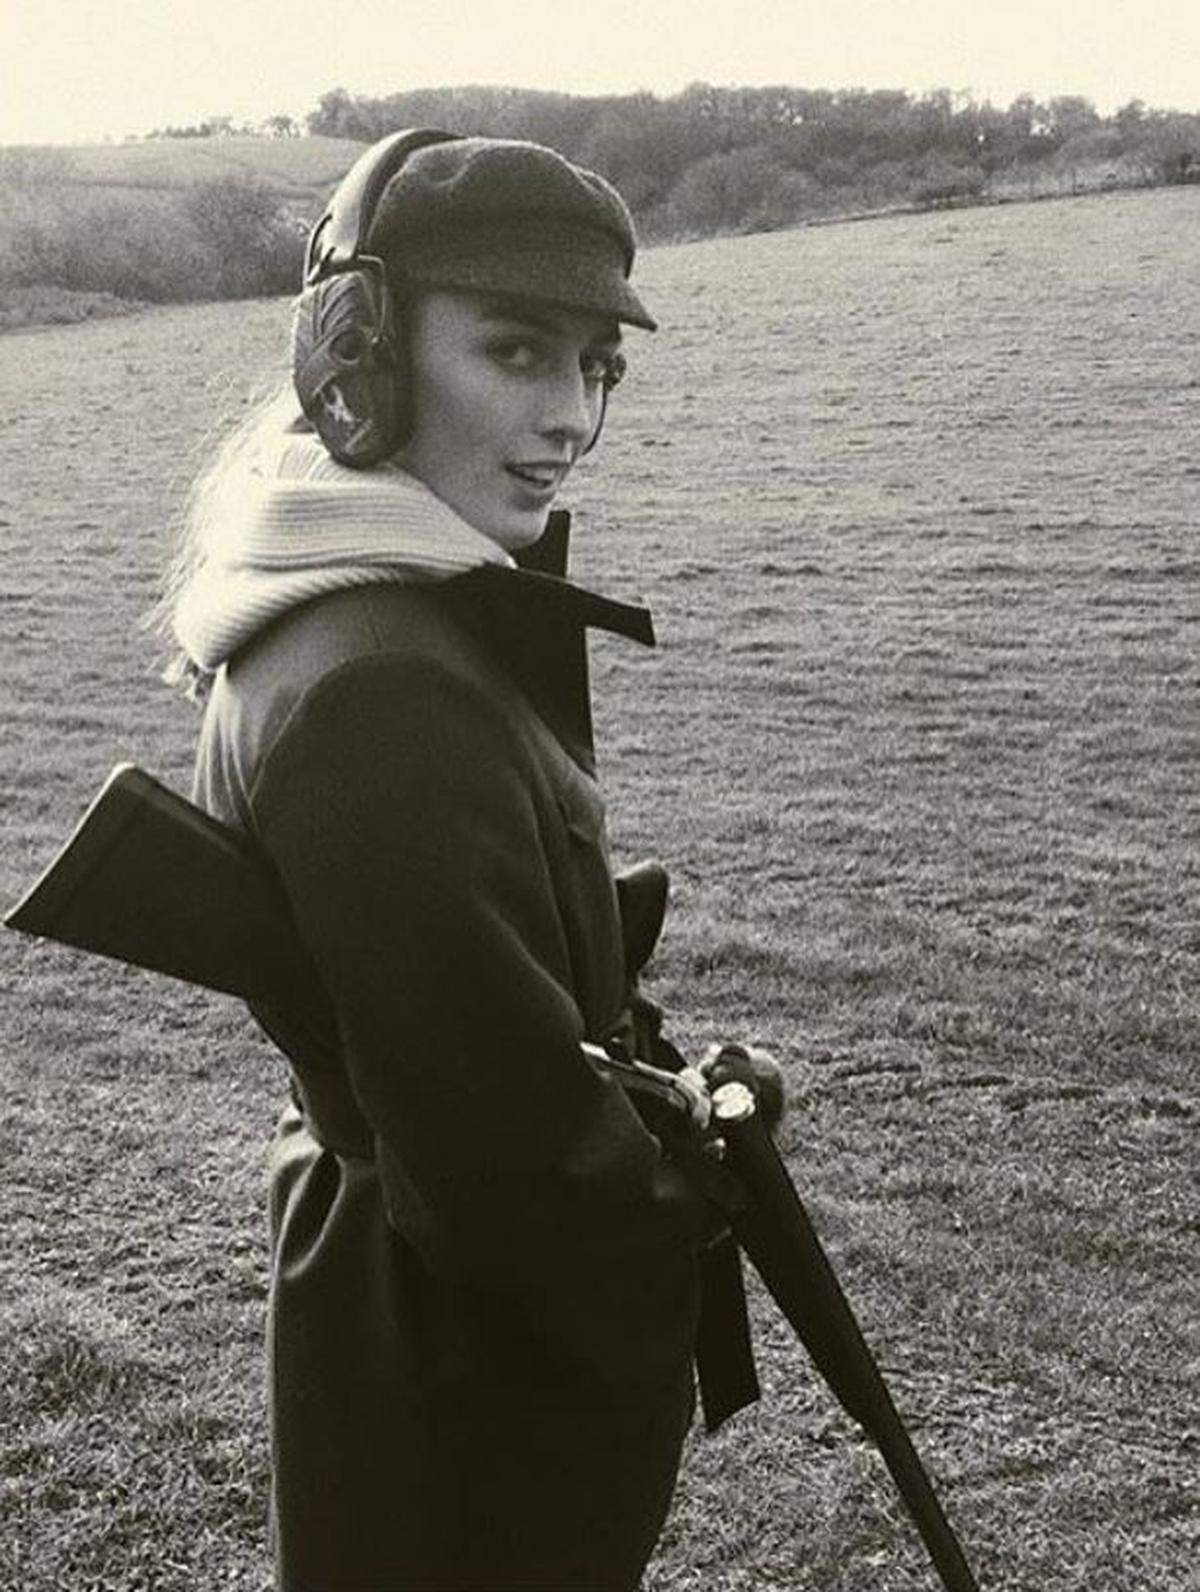 Lady Alices Instagram-Profil ist voll mit Fotos von ihr beim Schießen und beim Reiten.